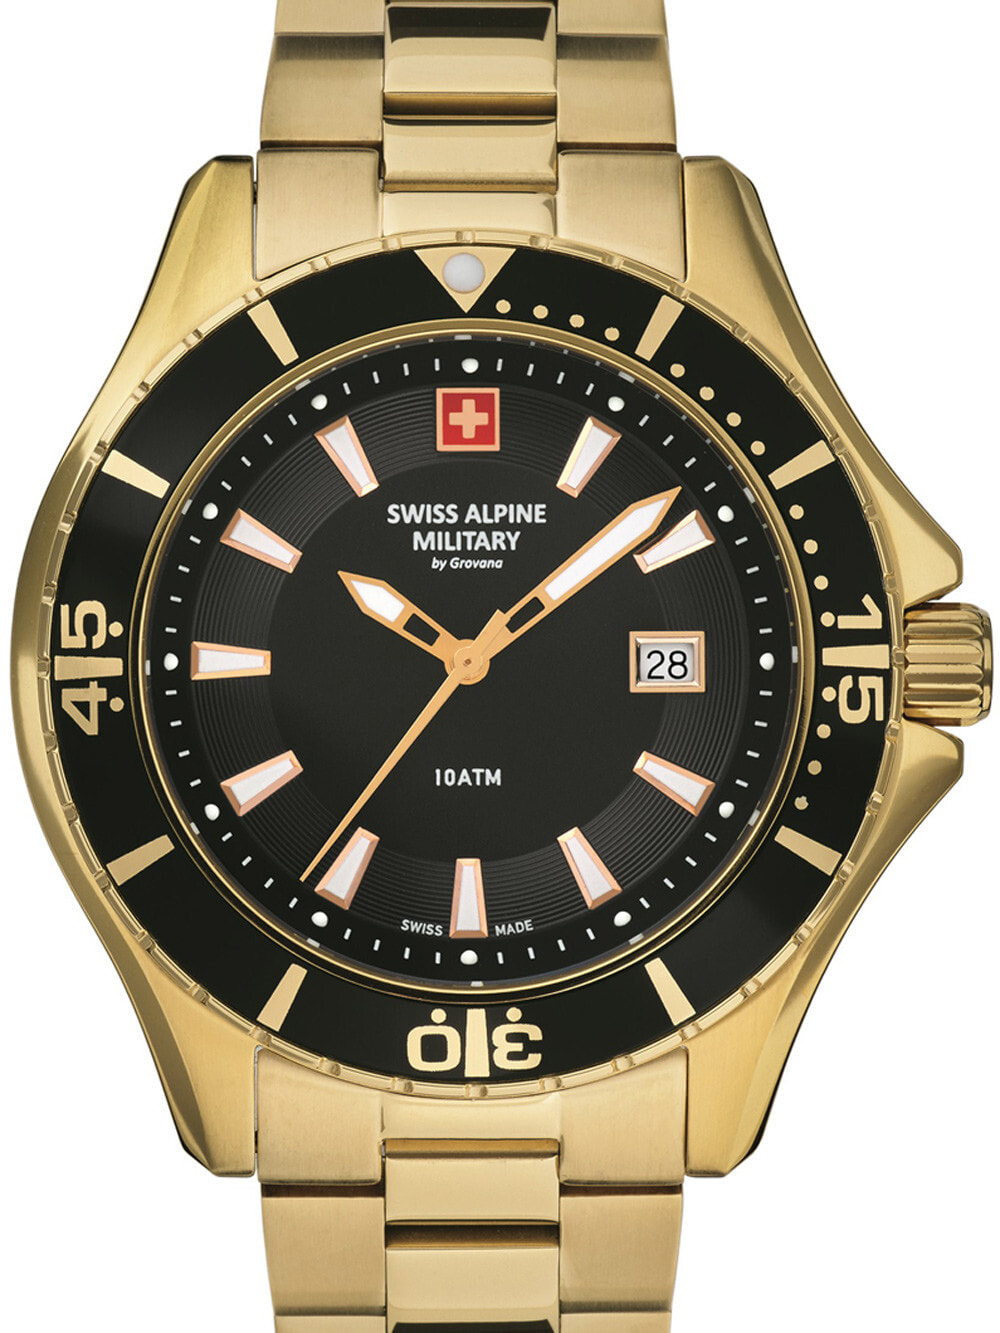 Мужские наручные часы с золотым браслетом Swiss Alpine Military 7040.1117 diver 45mm 10ATM